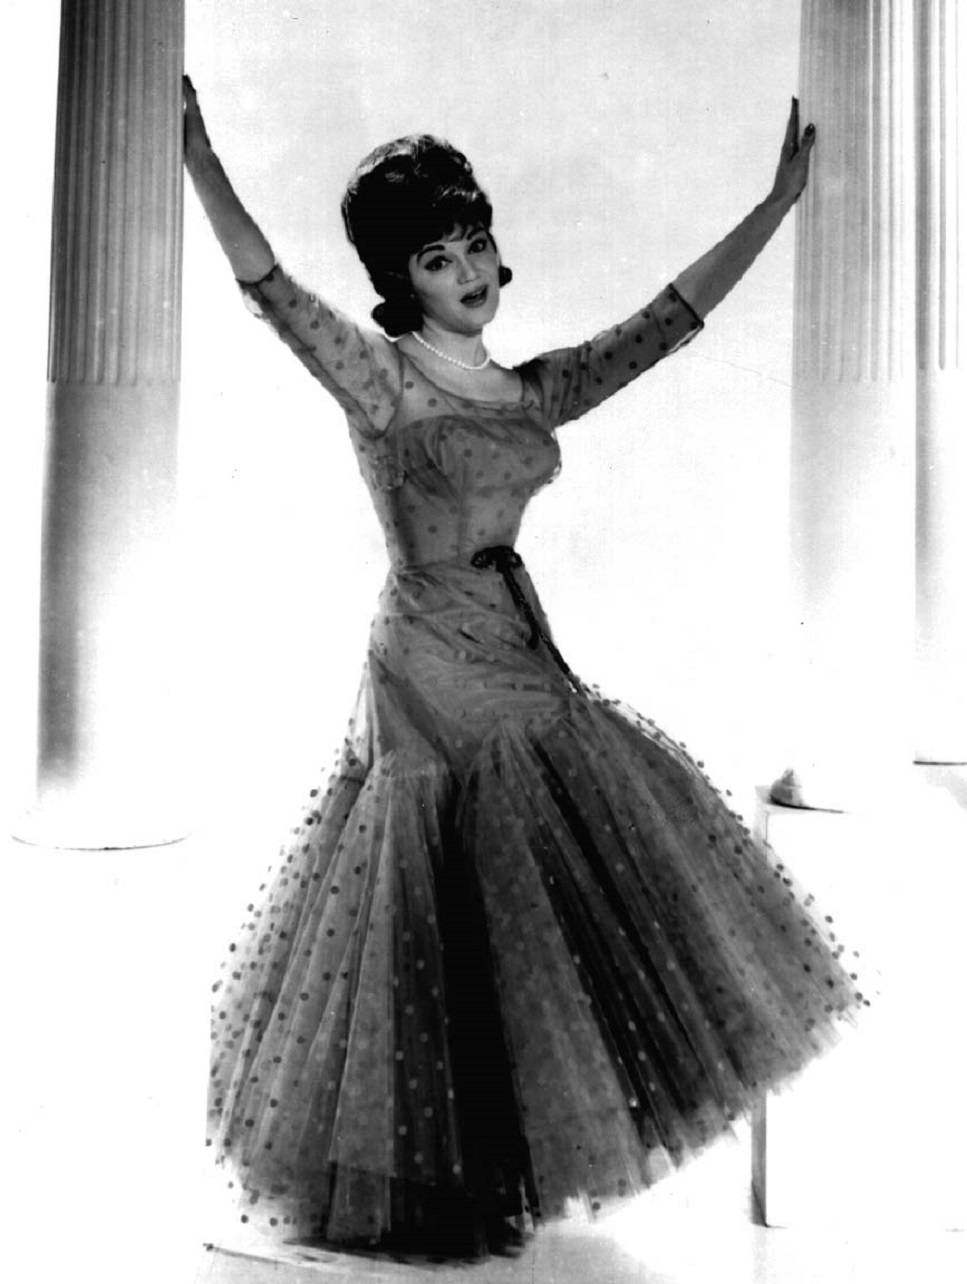 Cantanteestadounidense Connie Francis En El Vestido De Don Loper. Fondo de pantalla